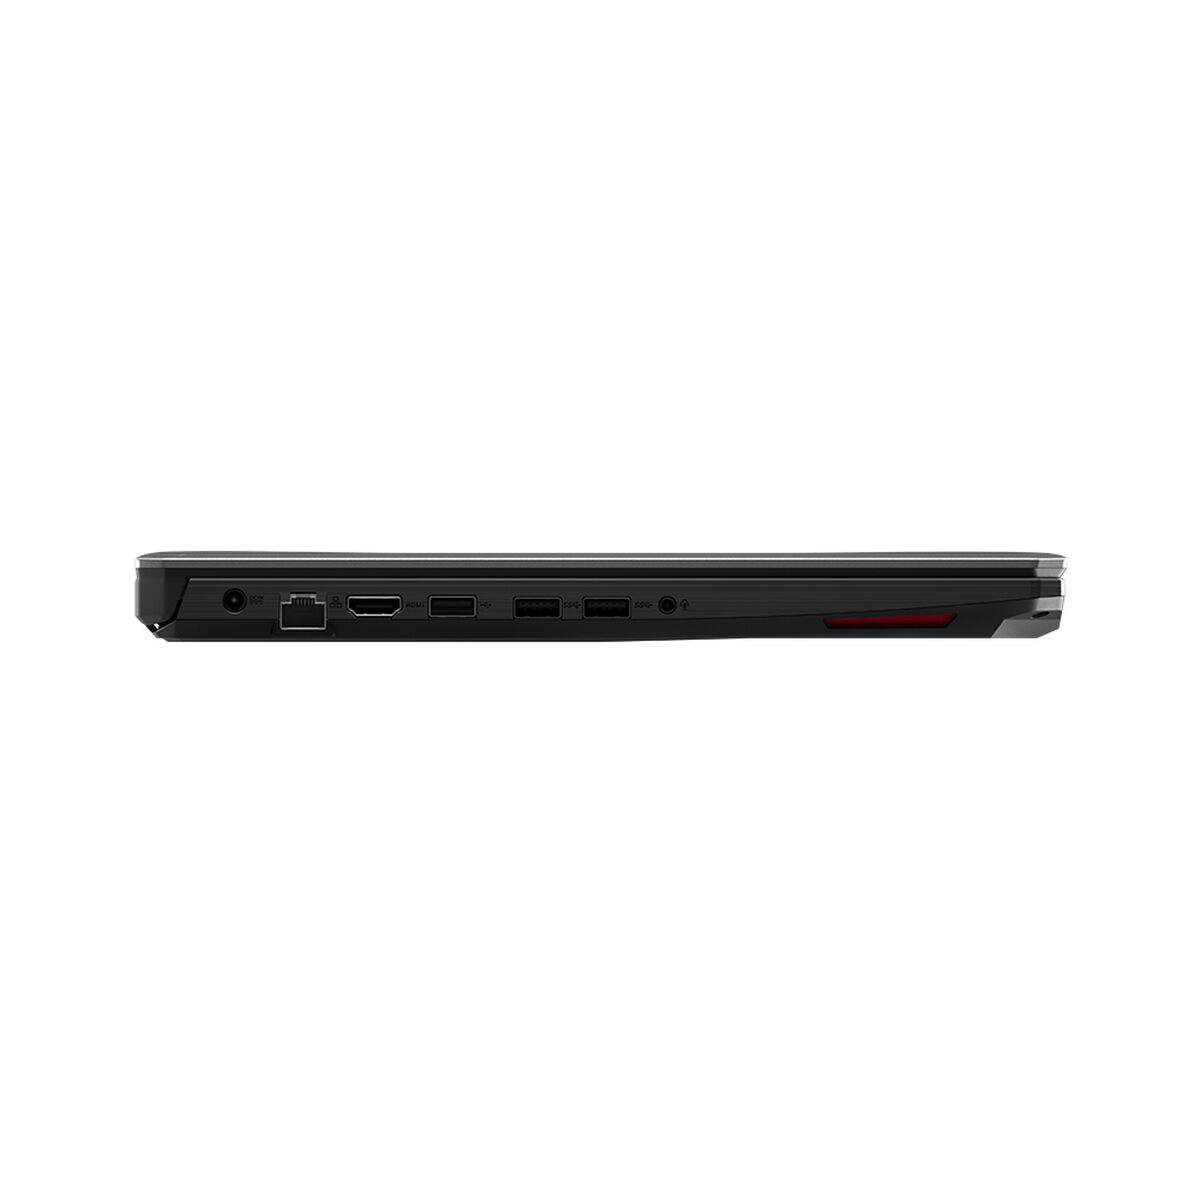 Notebook Gamer Asus FX505DU-AL090T Ryzen 7-3750H 8GB 1TB 15.6” NVIDIA GTX 1660Ti